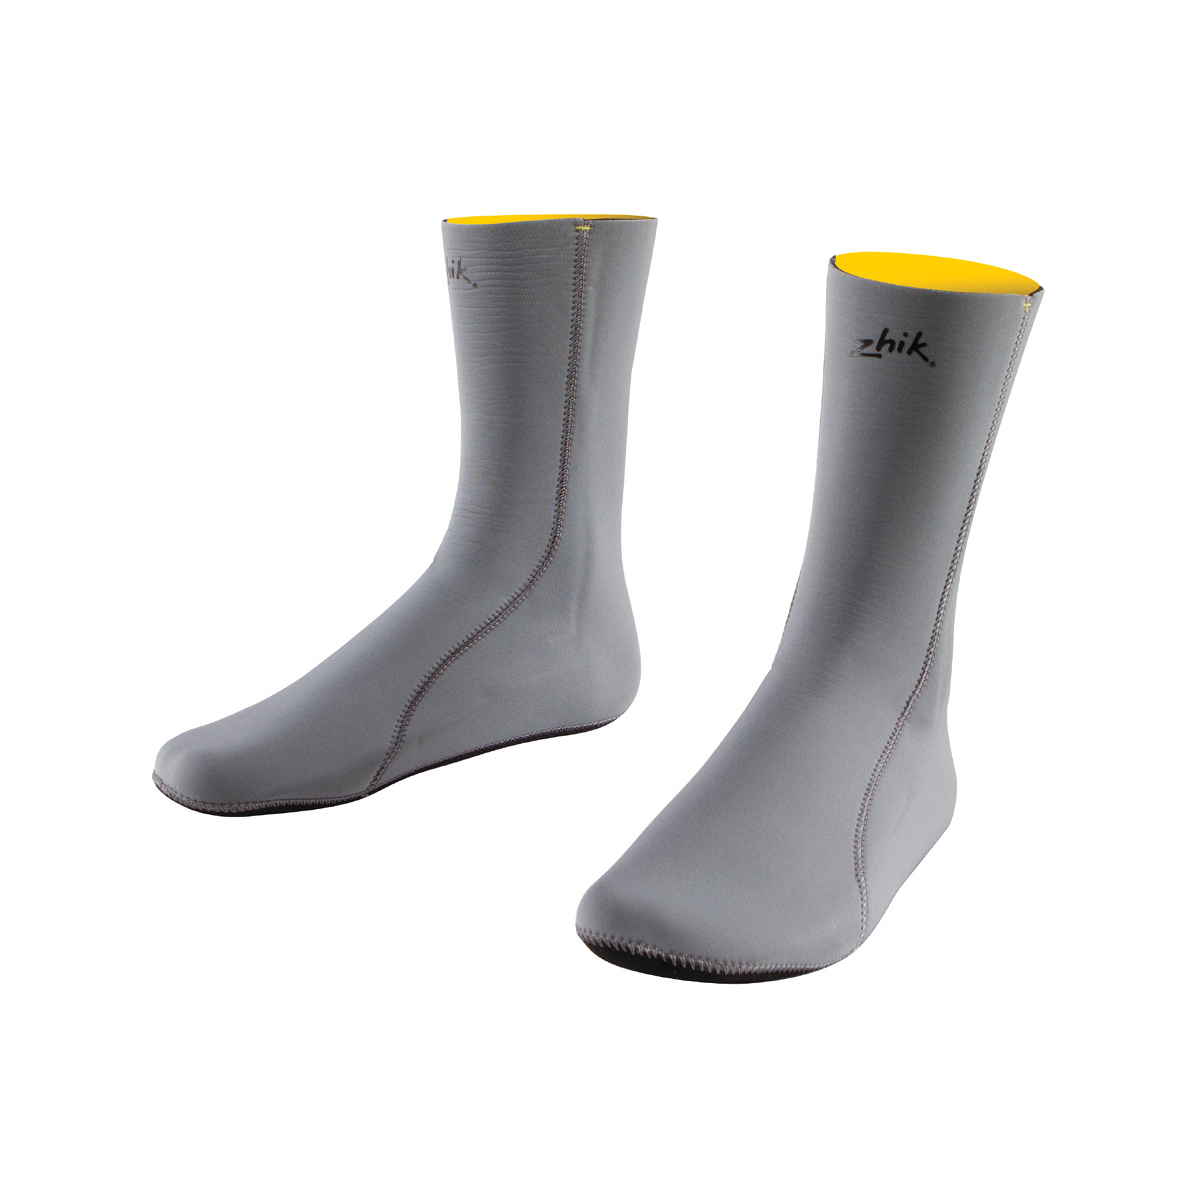 Zhik Superwarm Socks chaussettes néoprène 3mm gris, taille 10-13 US